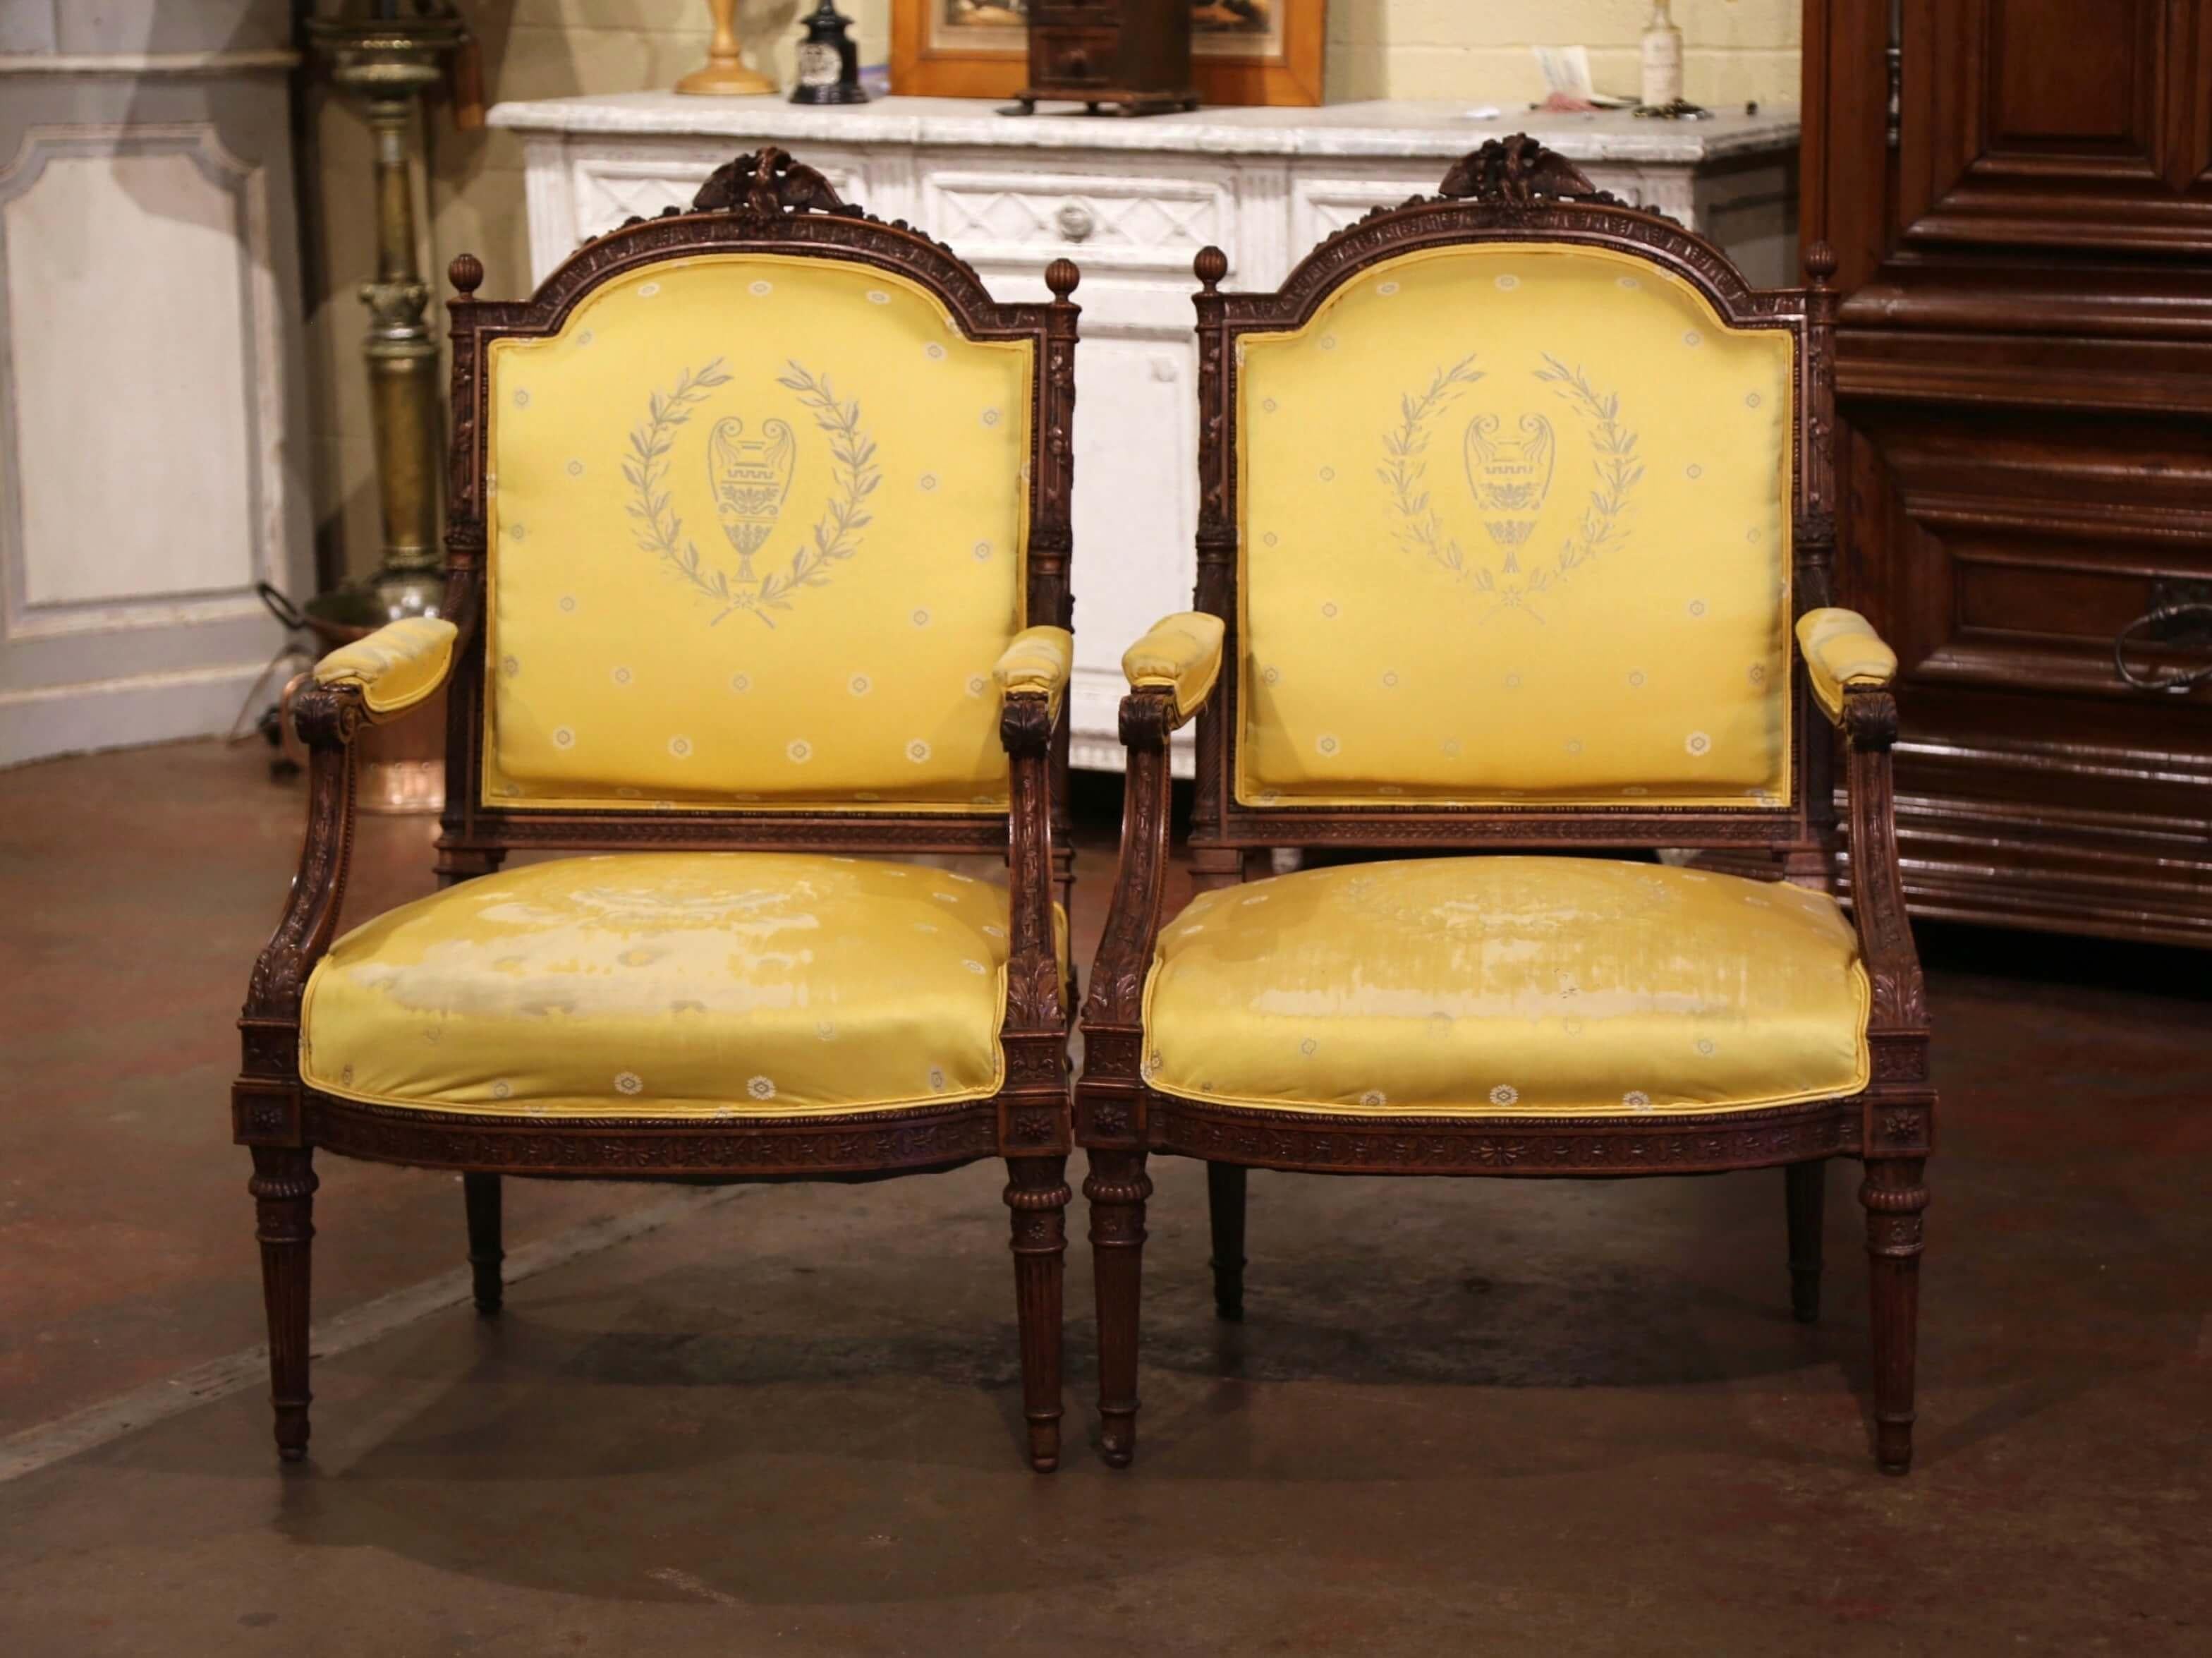 Complétez votre salon formel ou votre DEN avec cette élégante paire de fauteuils anciens. Créées en France vers 1880, ces grandes bergères classiques reposent sur des pieds fuselés et cannelés sculptés, surmontés d'un tablier en bombe. Chaque dos